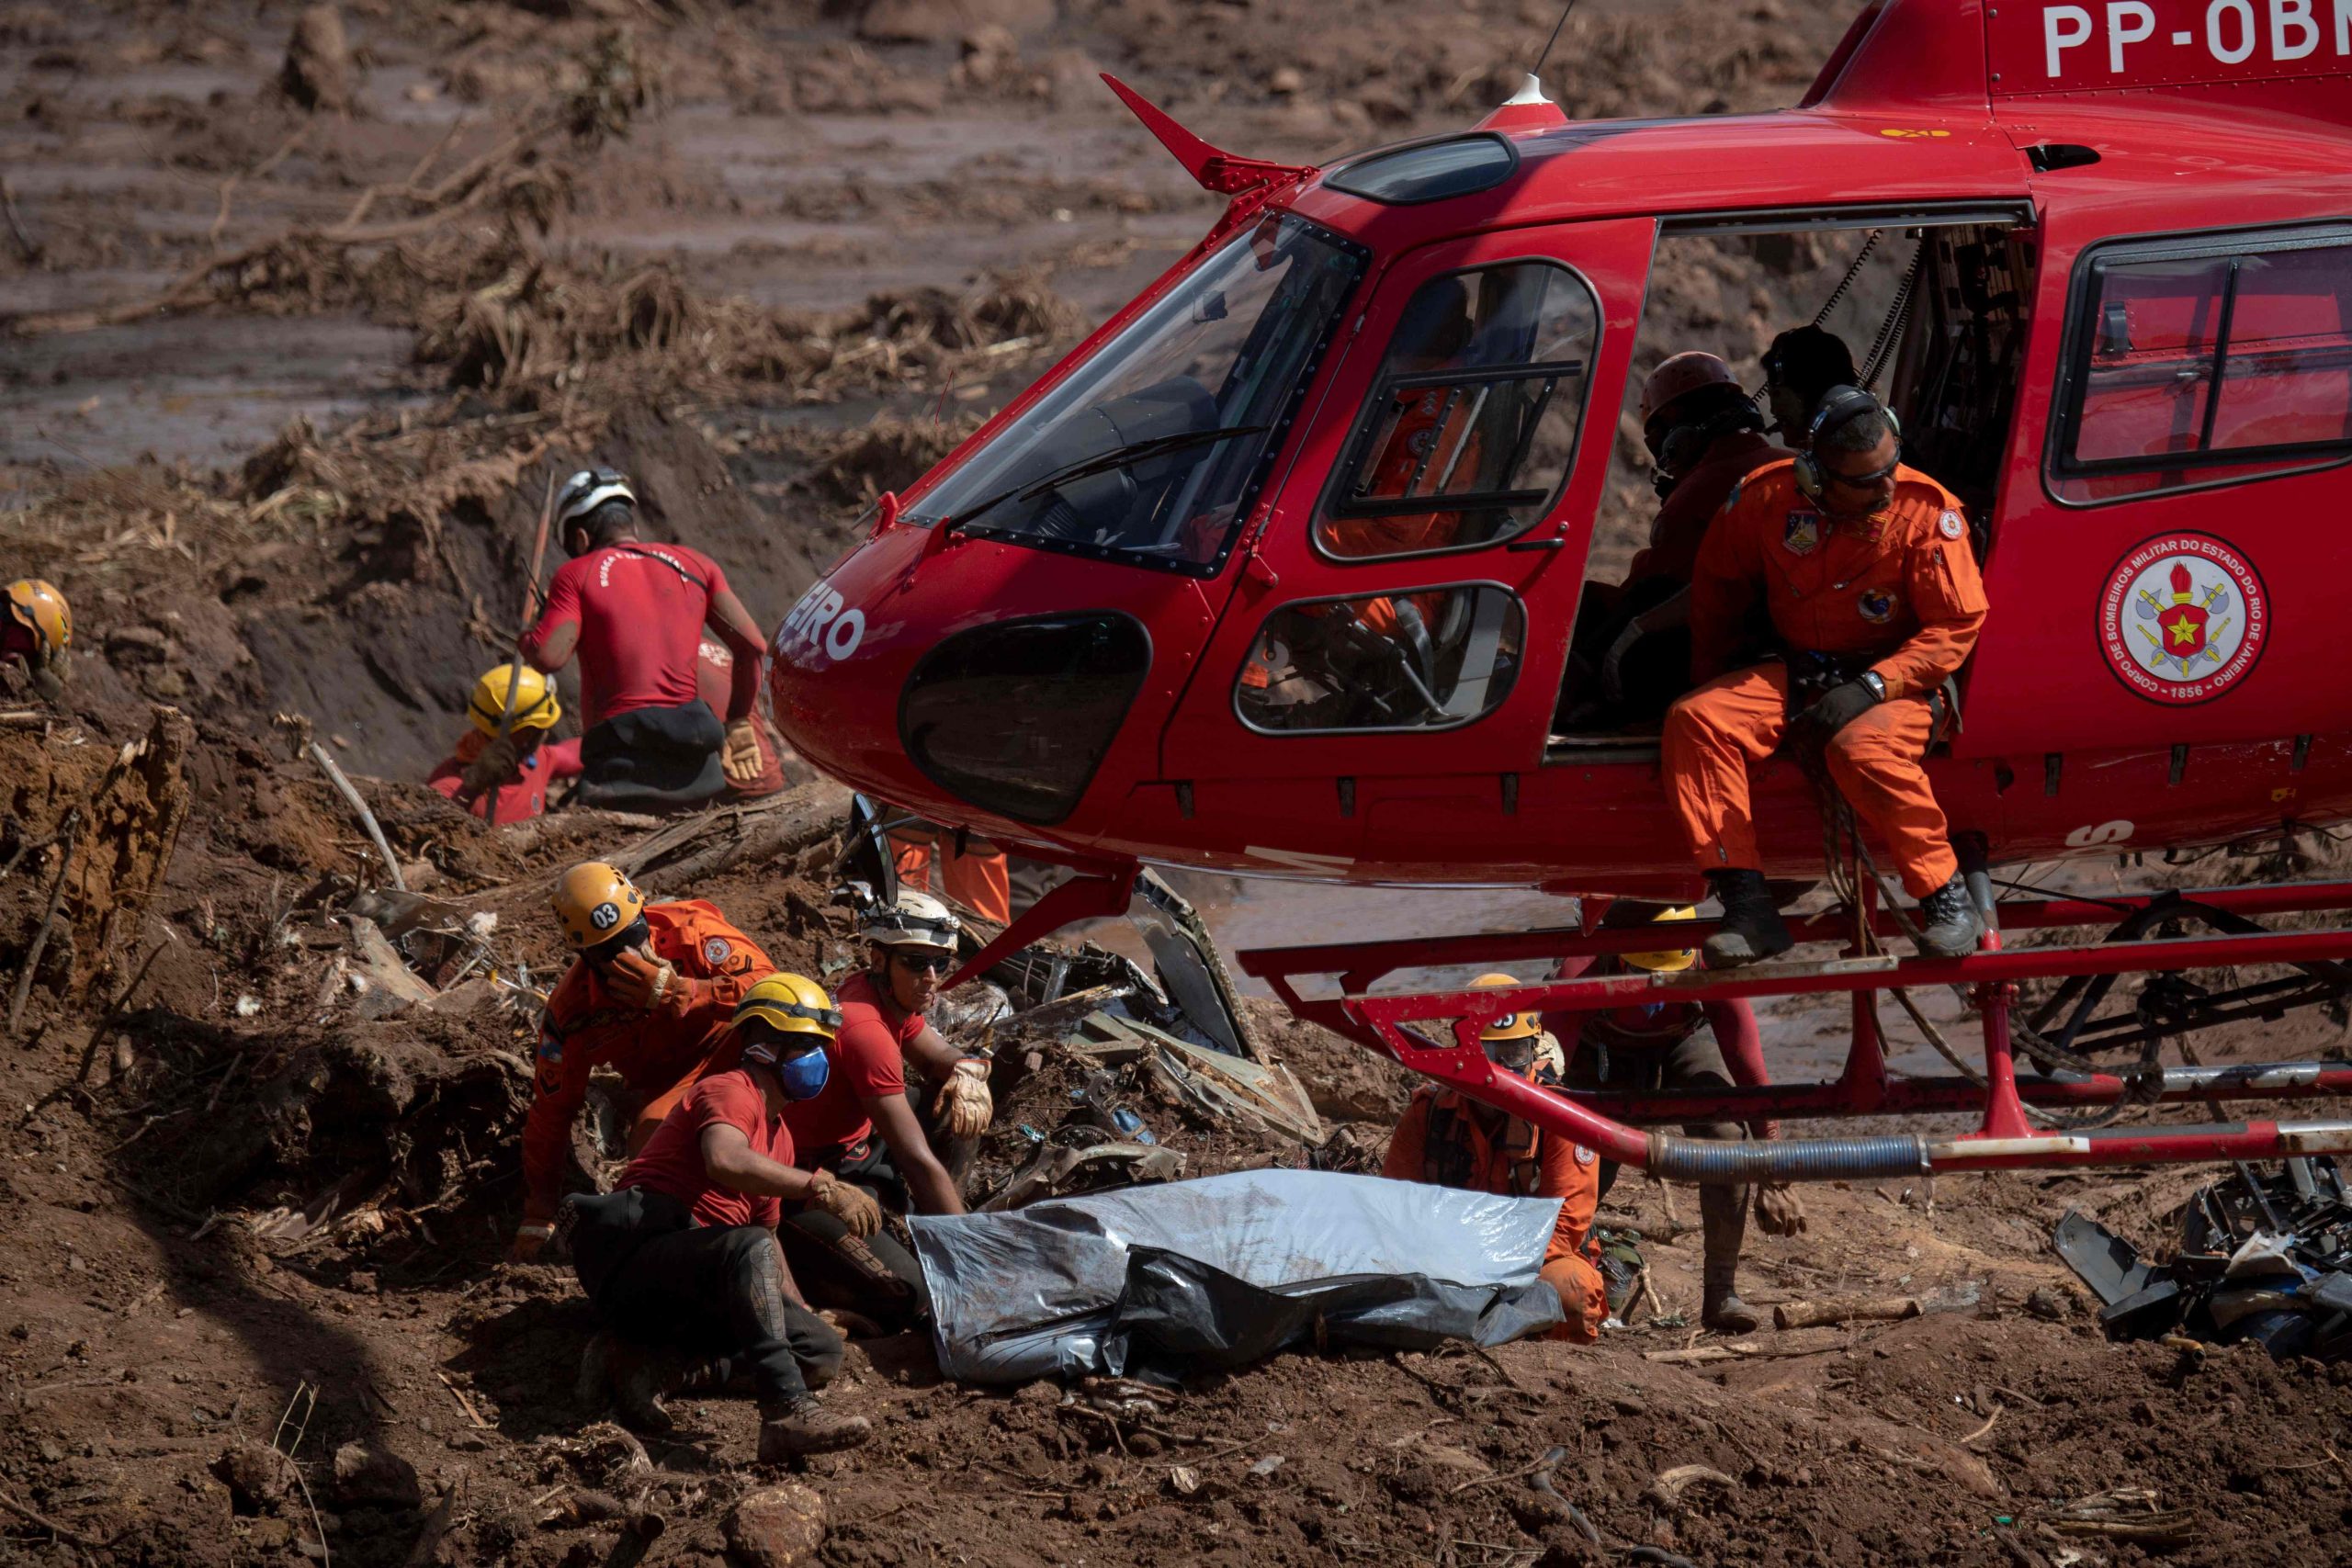 As imagens das operações de resgate na barragem em Minas Gerais | FOTOGALERIA